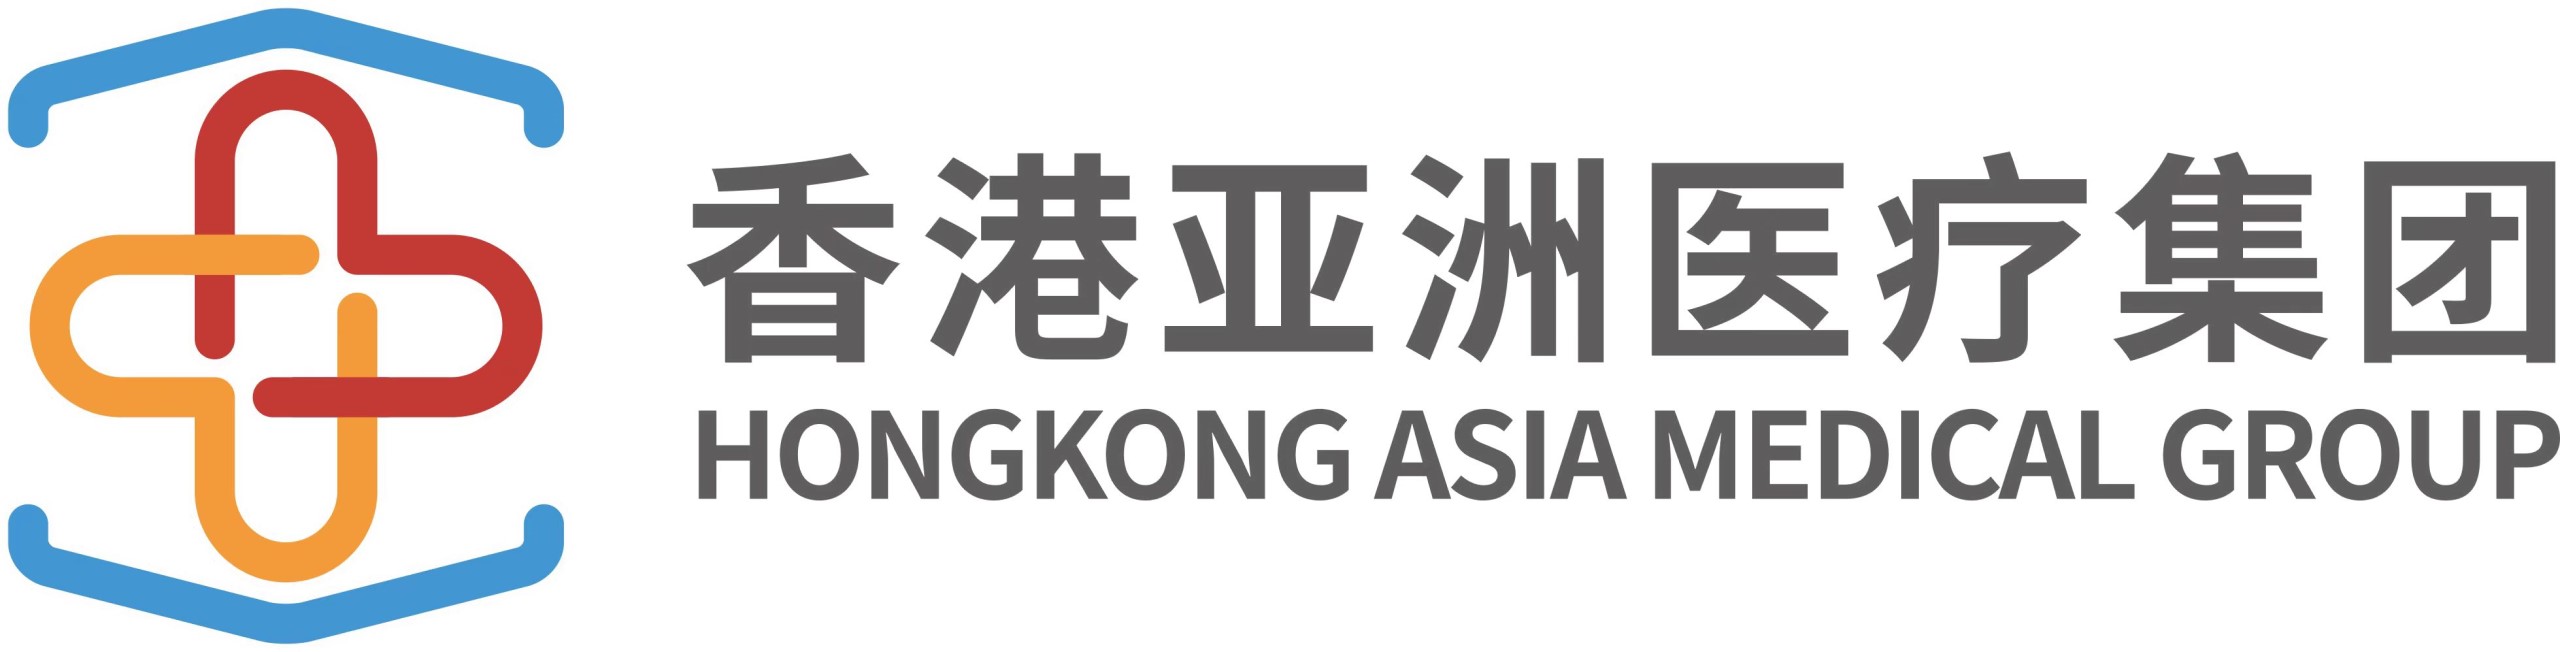 香港亚洲医疗集团